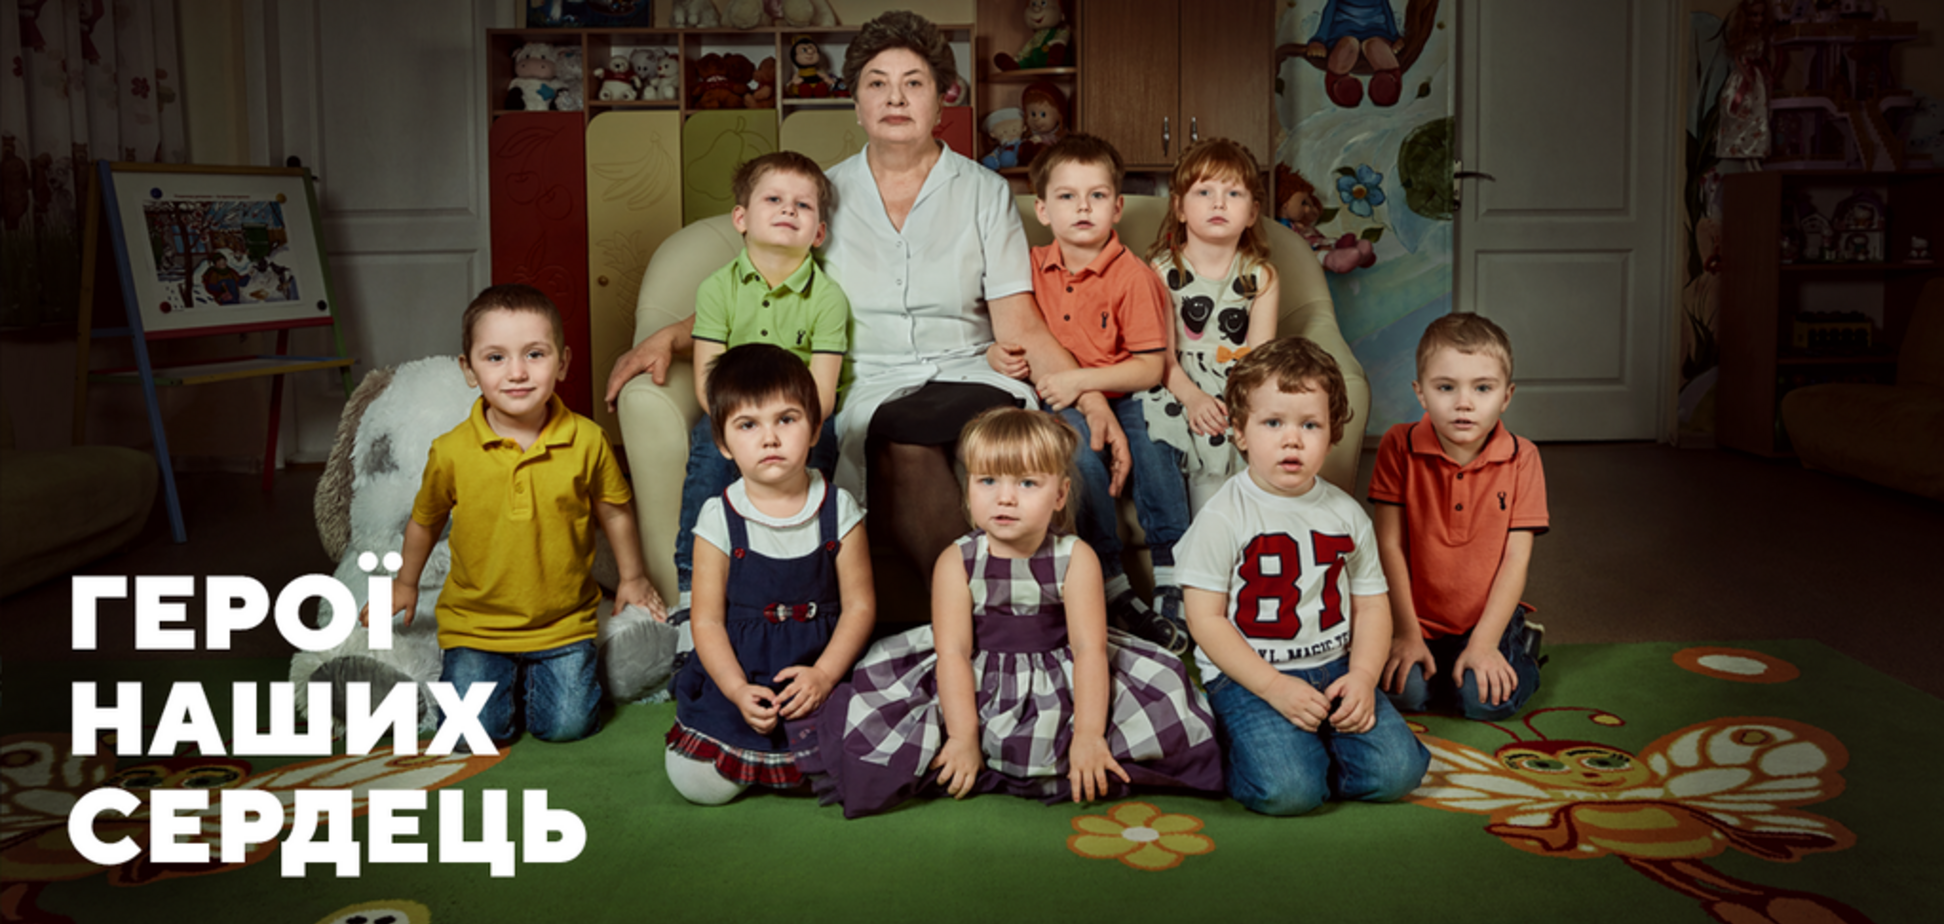 Спасла детей от России: история Екатерины Донцовой, совершившей подвиг в 2014 году